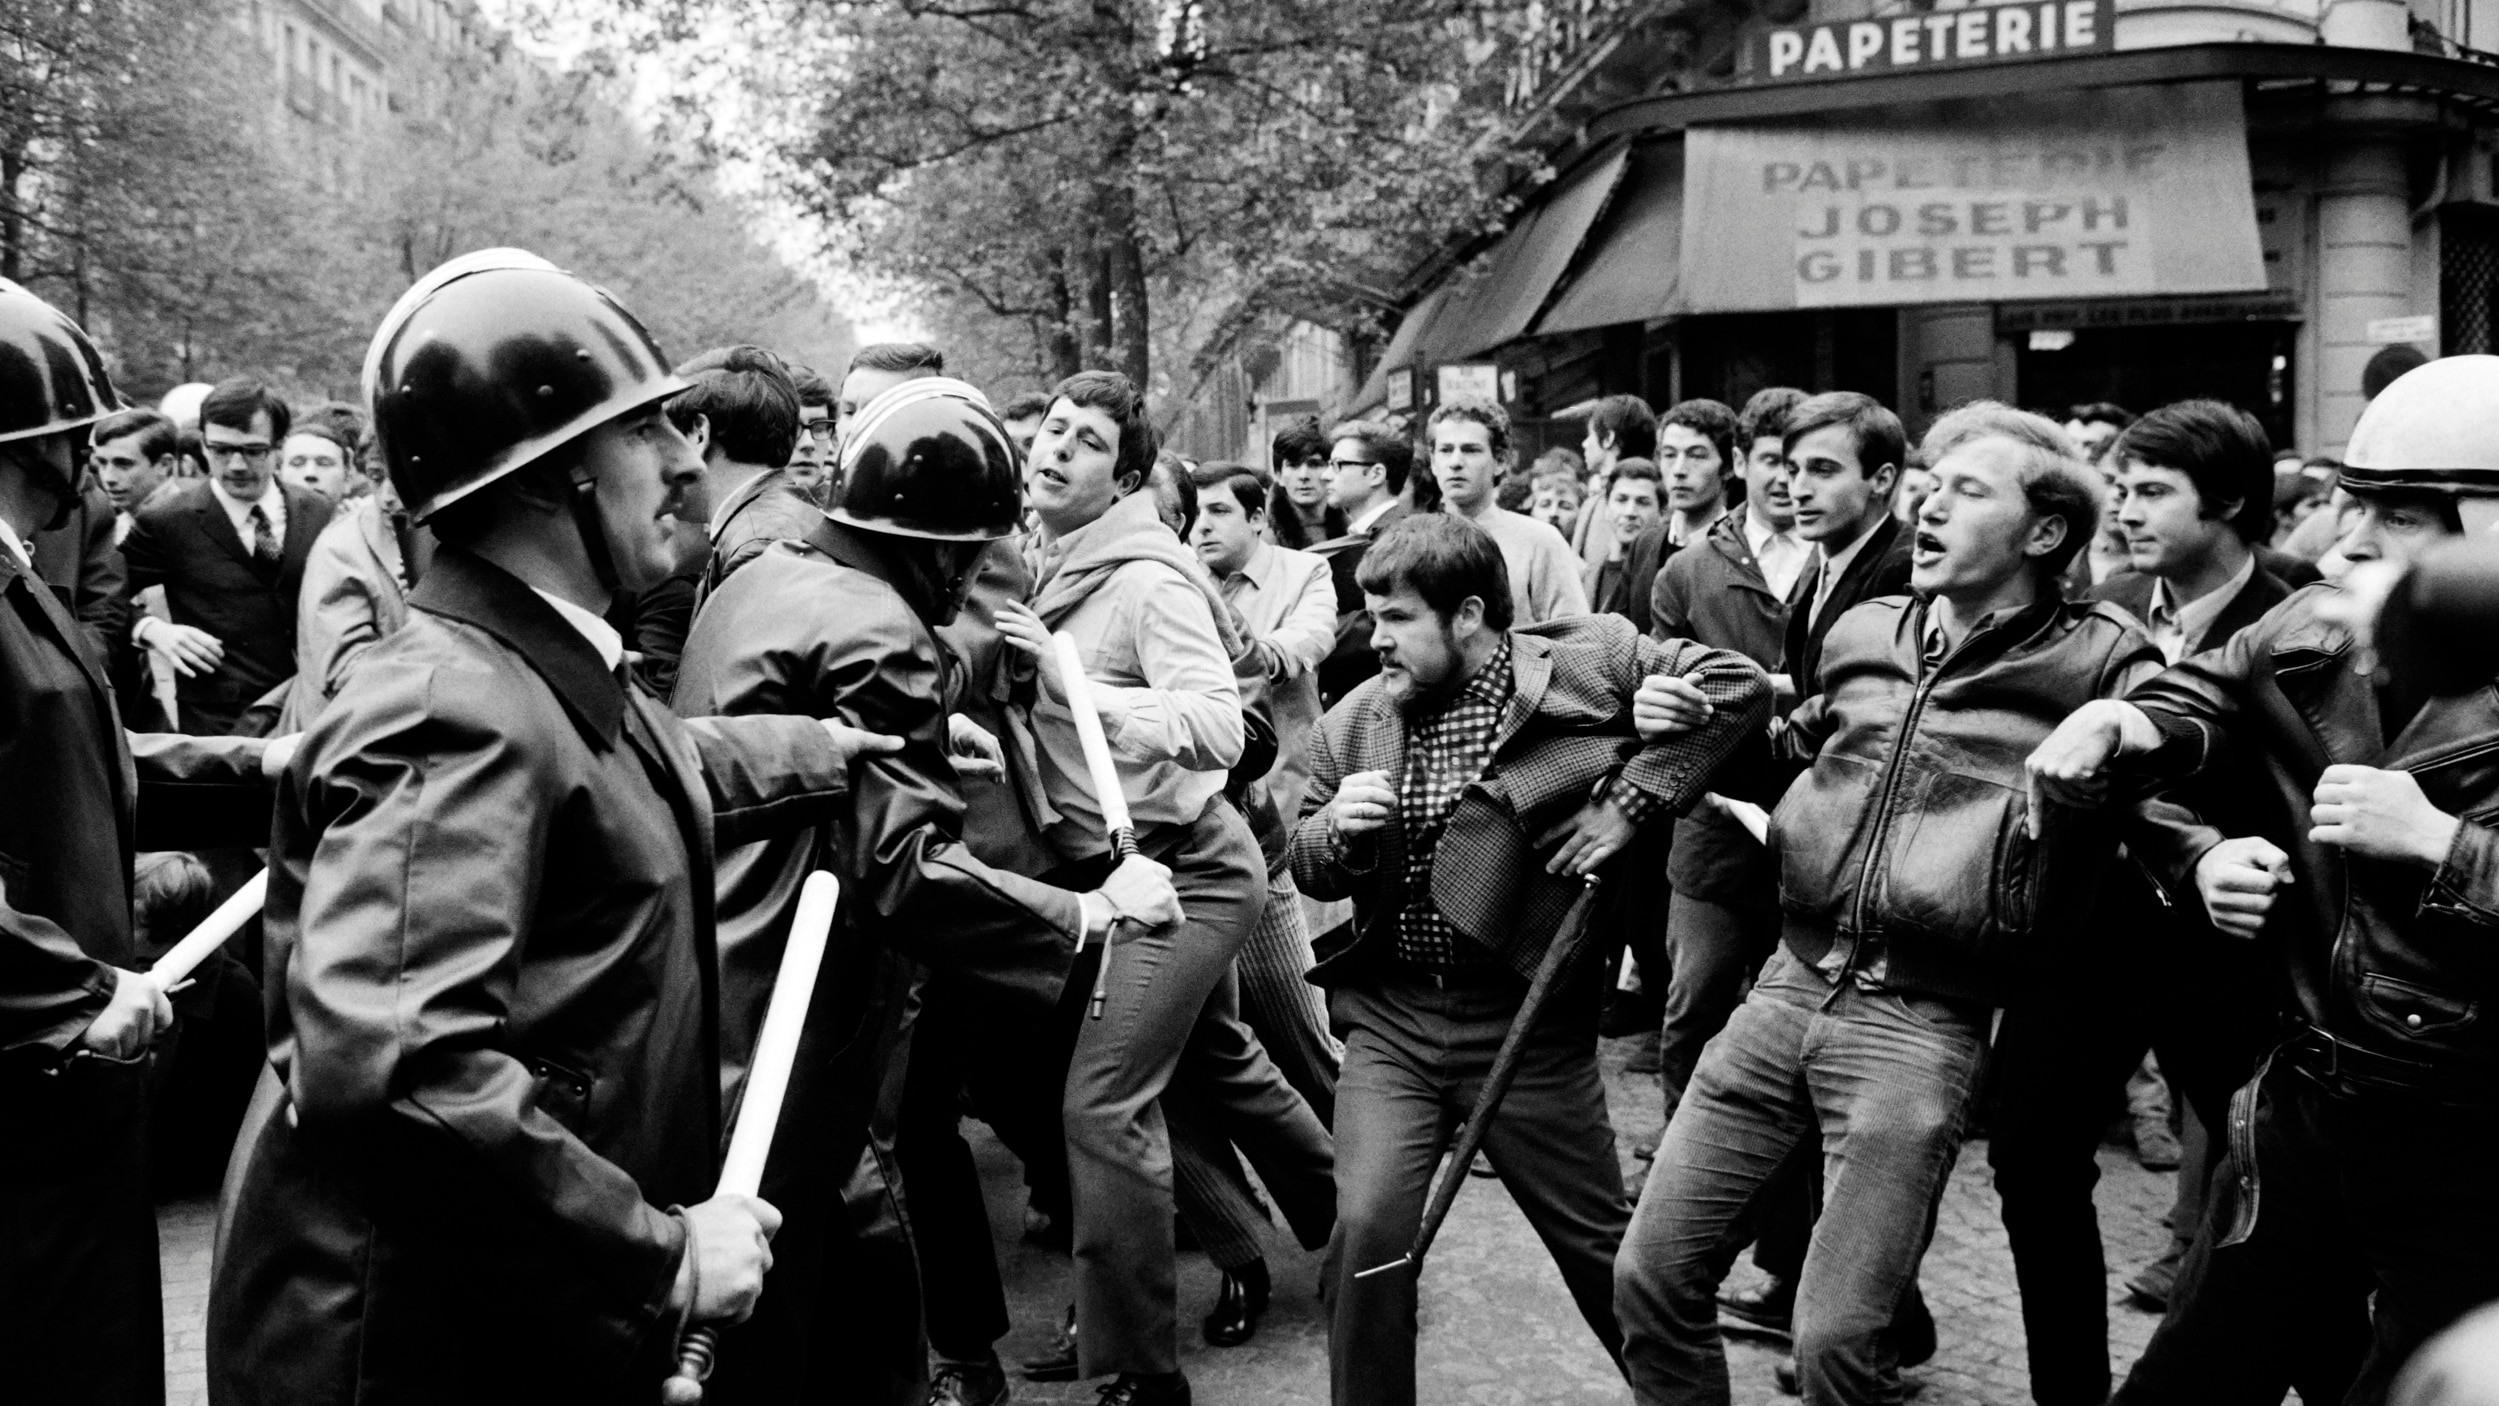 Photo en noir et blanc prise le Le 6 mai 1968, des étudiants et des protestataires font face à la police, à Paris, devant la librairie Joseph Gibert près de la Sorbonne.